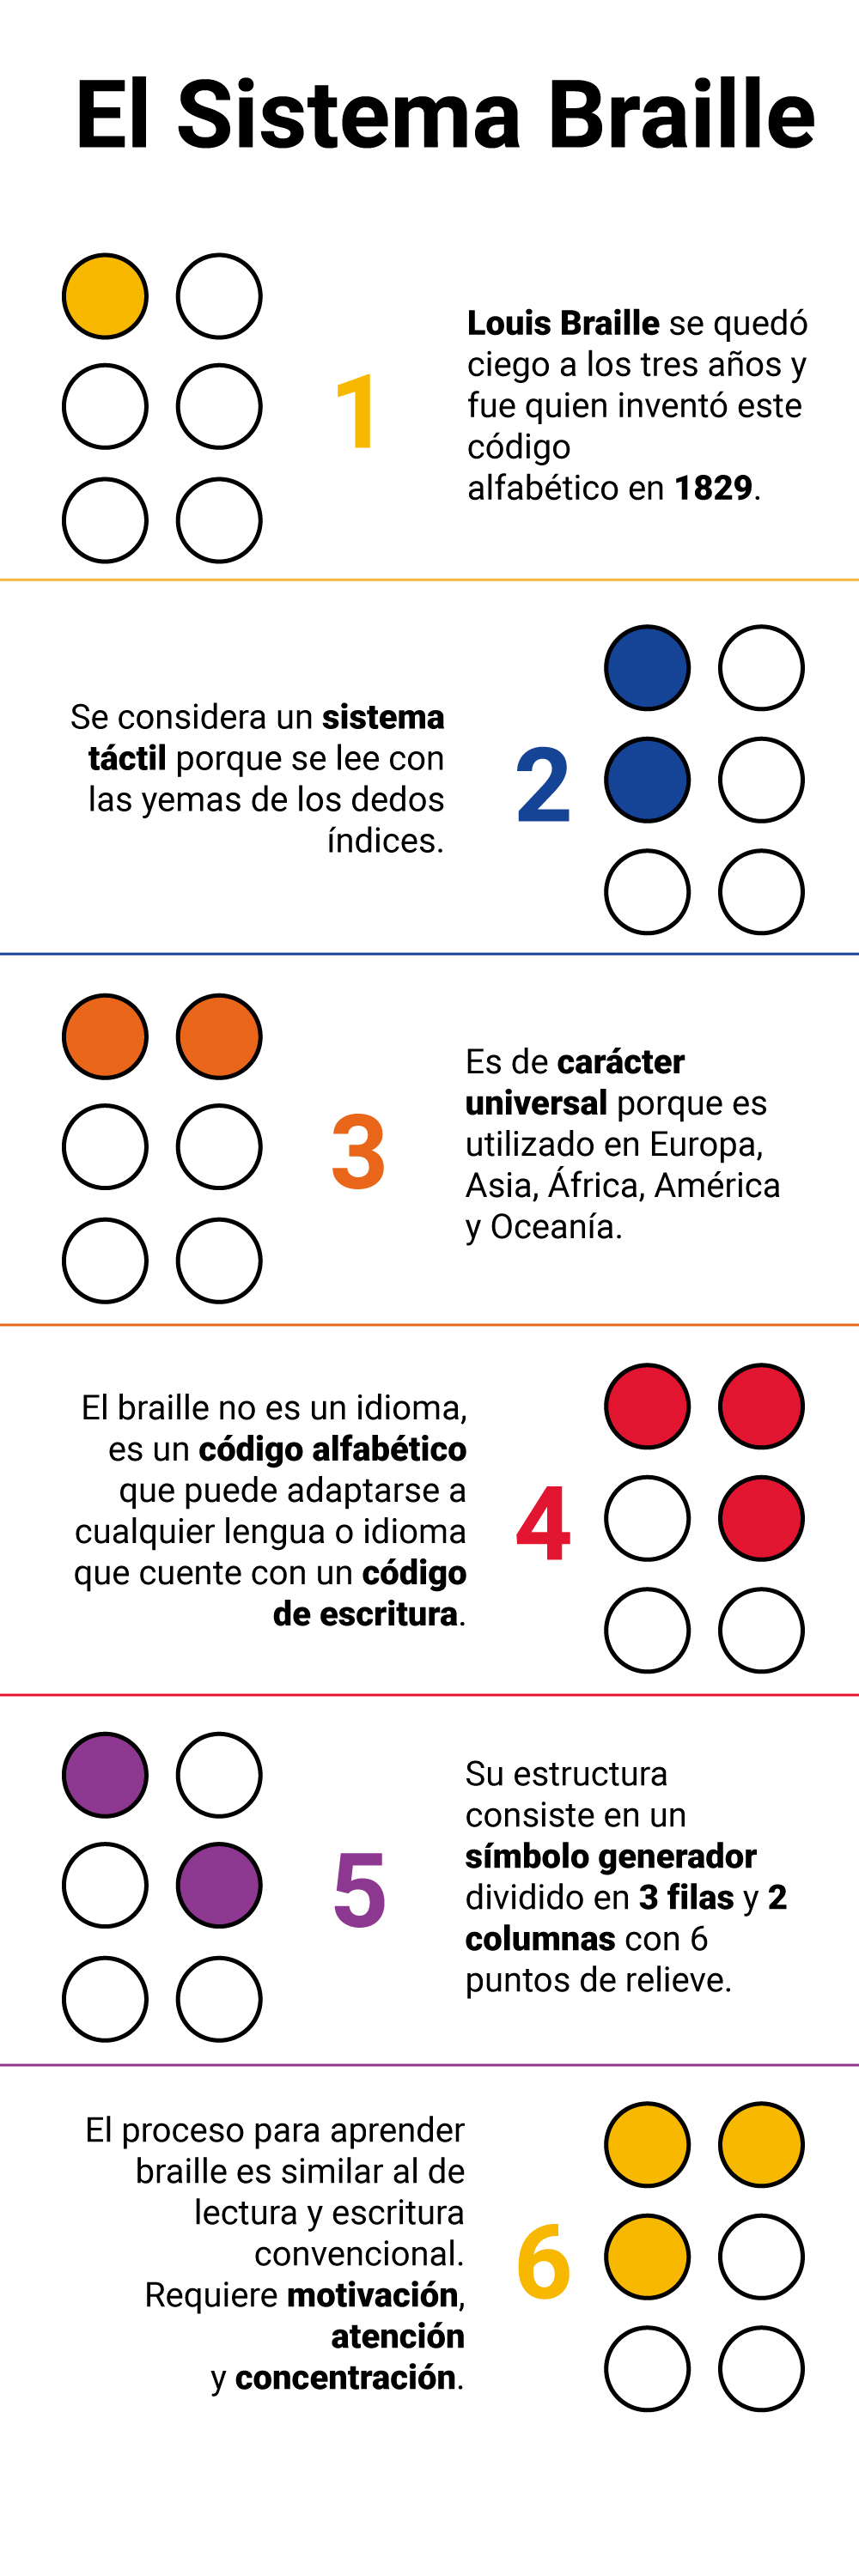 Curiosidades sobre el sistema Braille